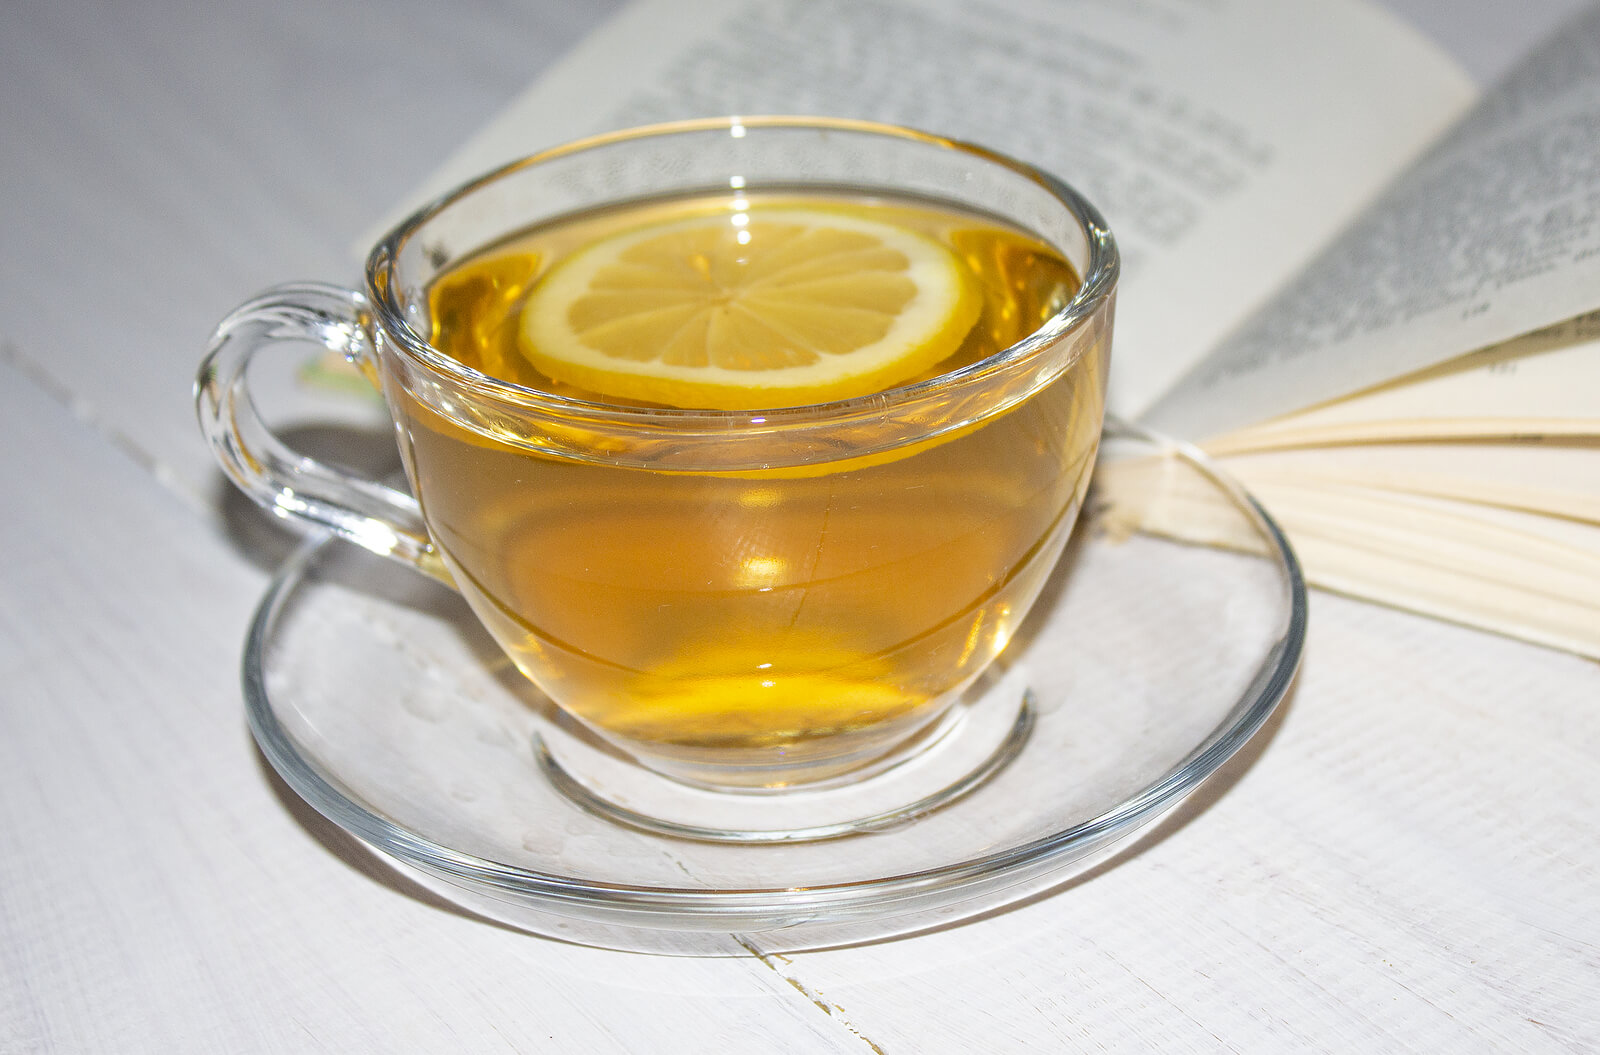 I rimedi naturali per la menopausa includono il tè